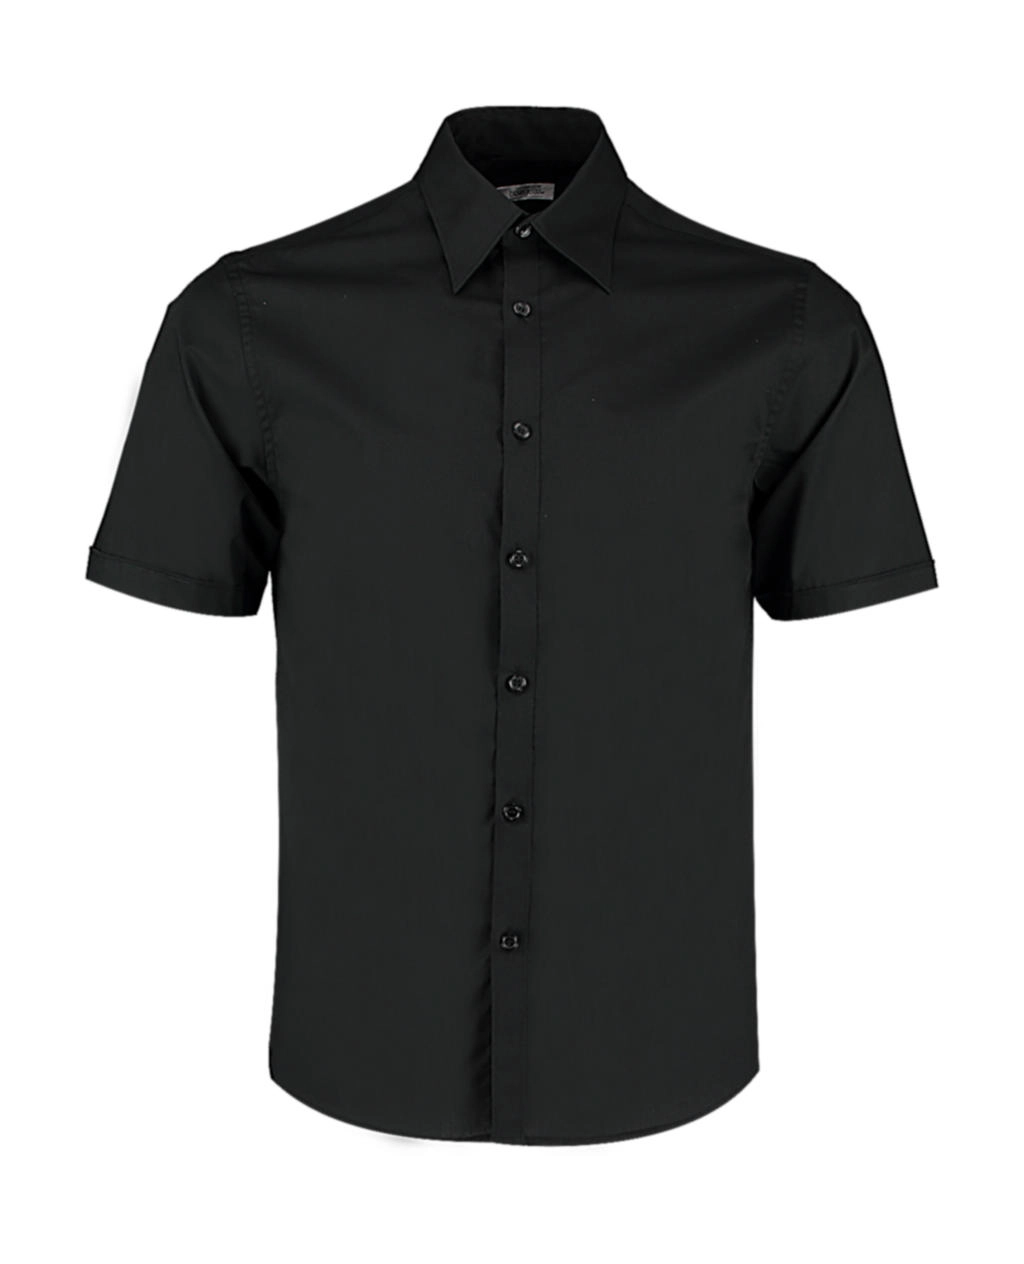 Tailored Fit Shirt SSL zum Besticken und Bedrucken mit Ihren Logo, Schriftzug oder Motiv.